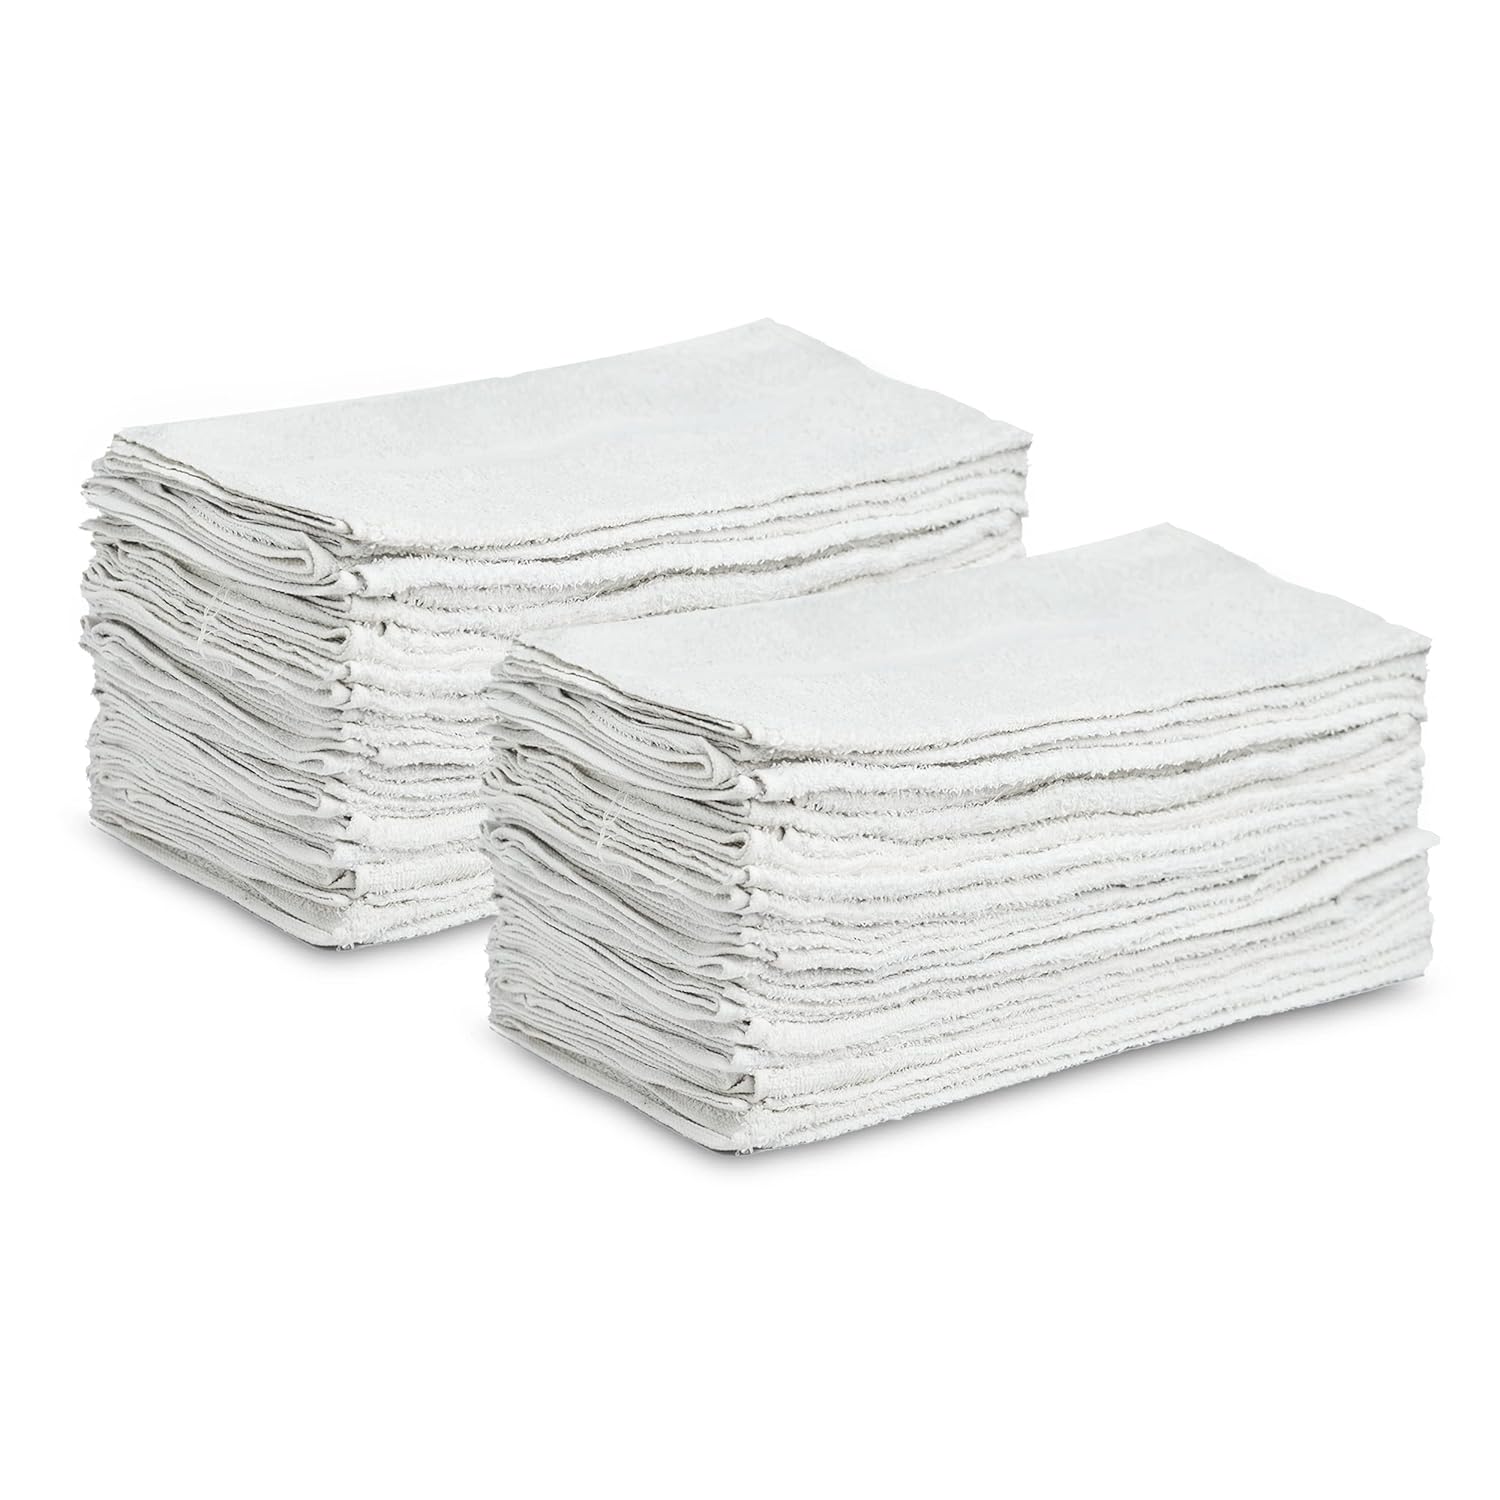 White Shop Towels 120 trapos de 16 x 27 pulgadas en una caja, valiosos trapos